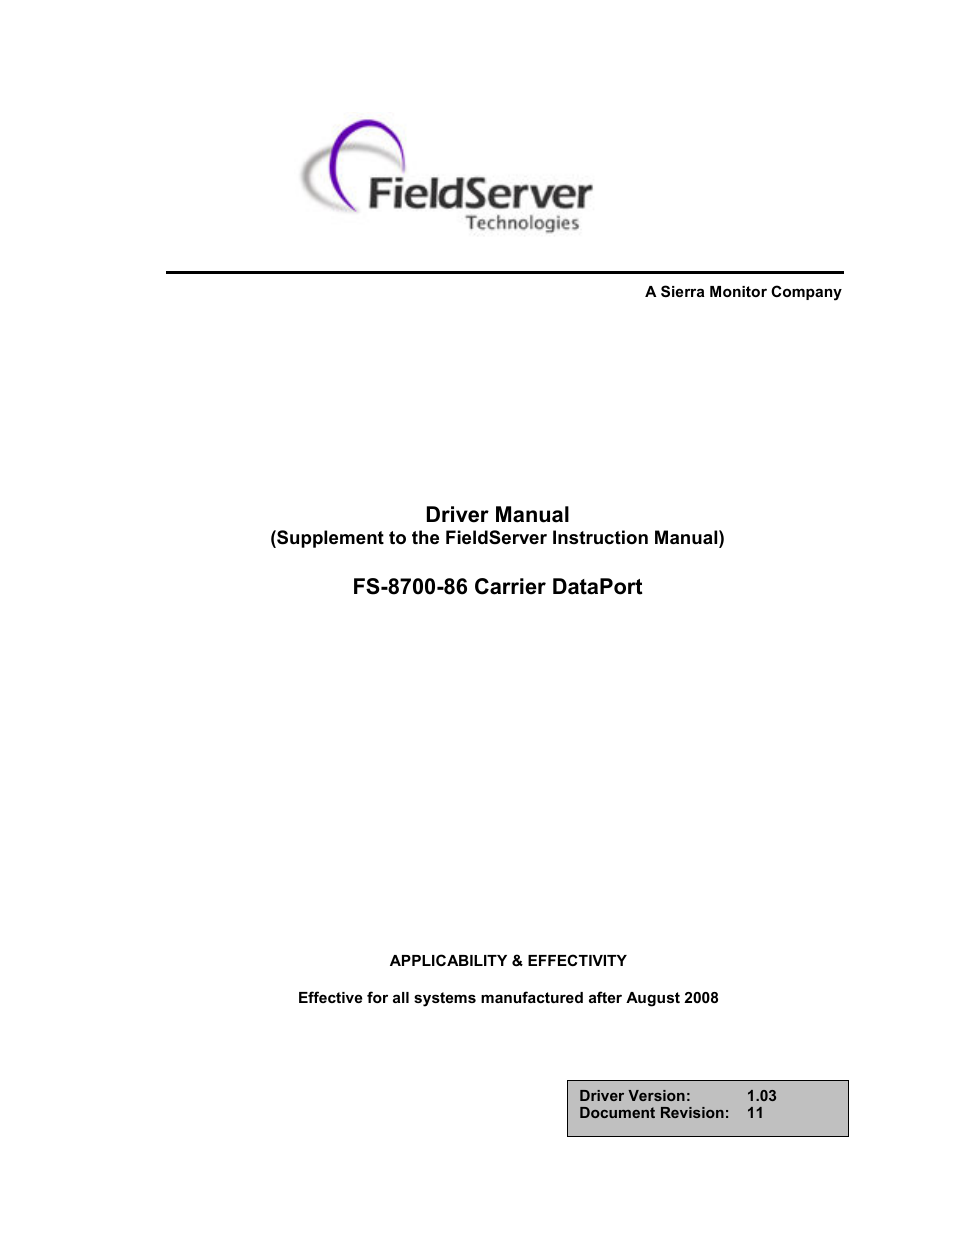 Carrier DataPort FS-8700-86